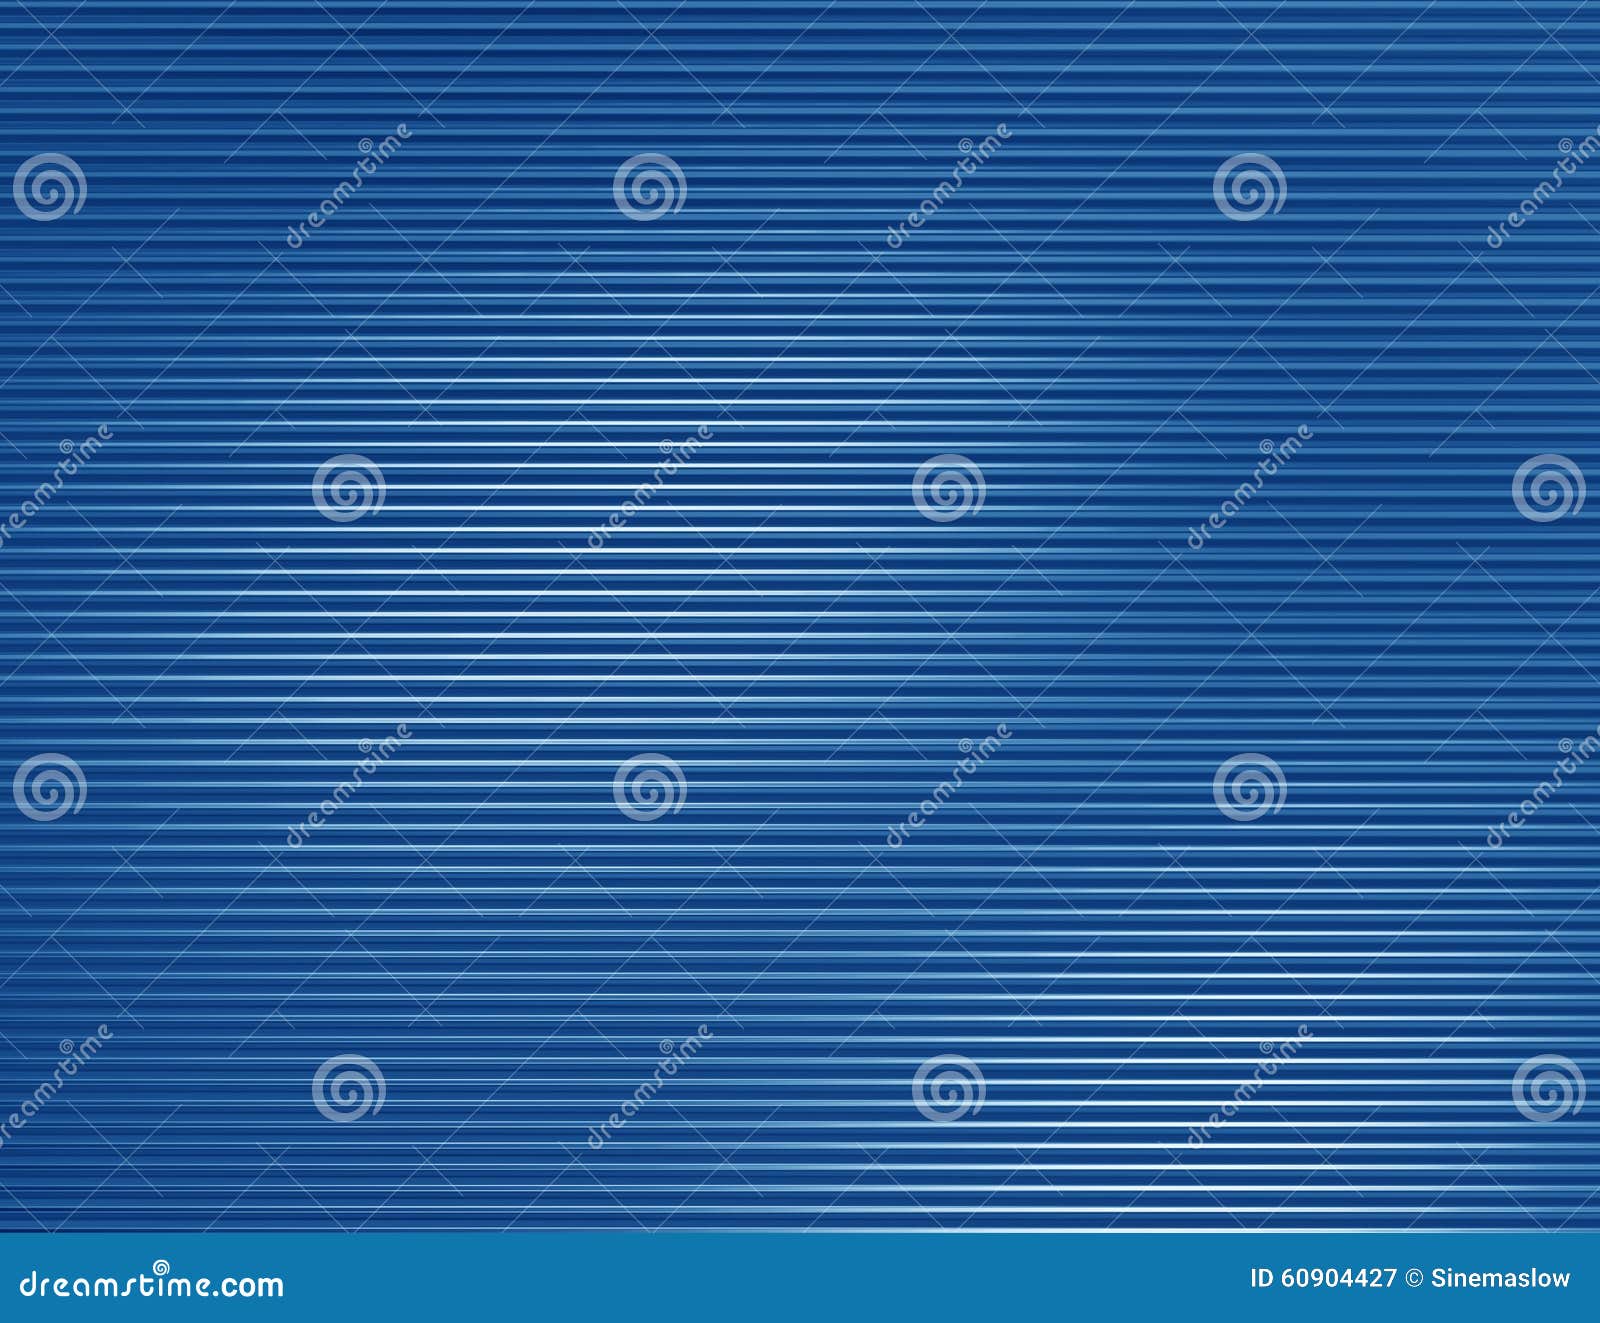 Blue texture stock illustration. Illustration of metallic - 60904427